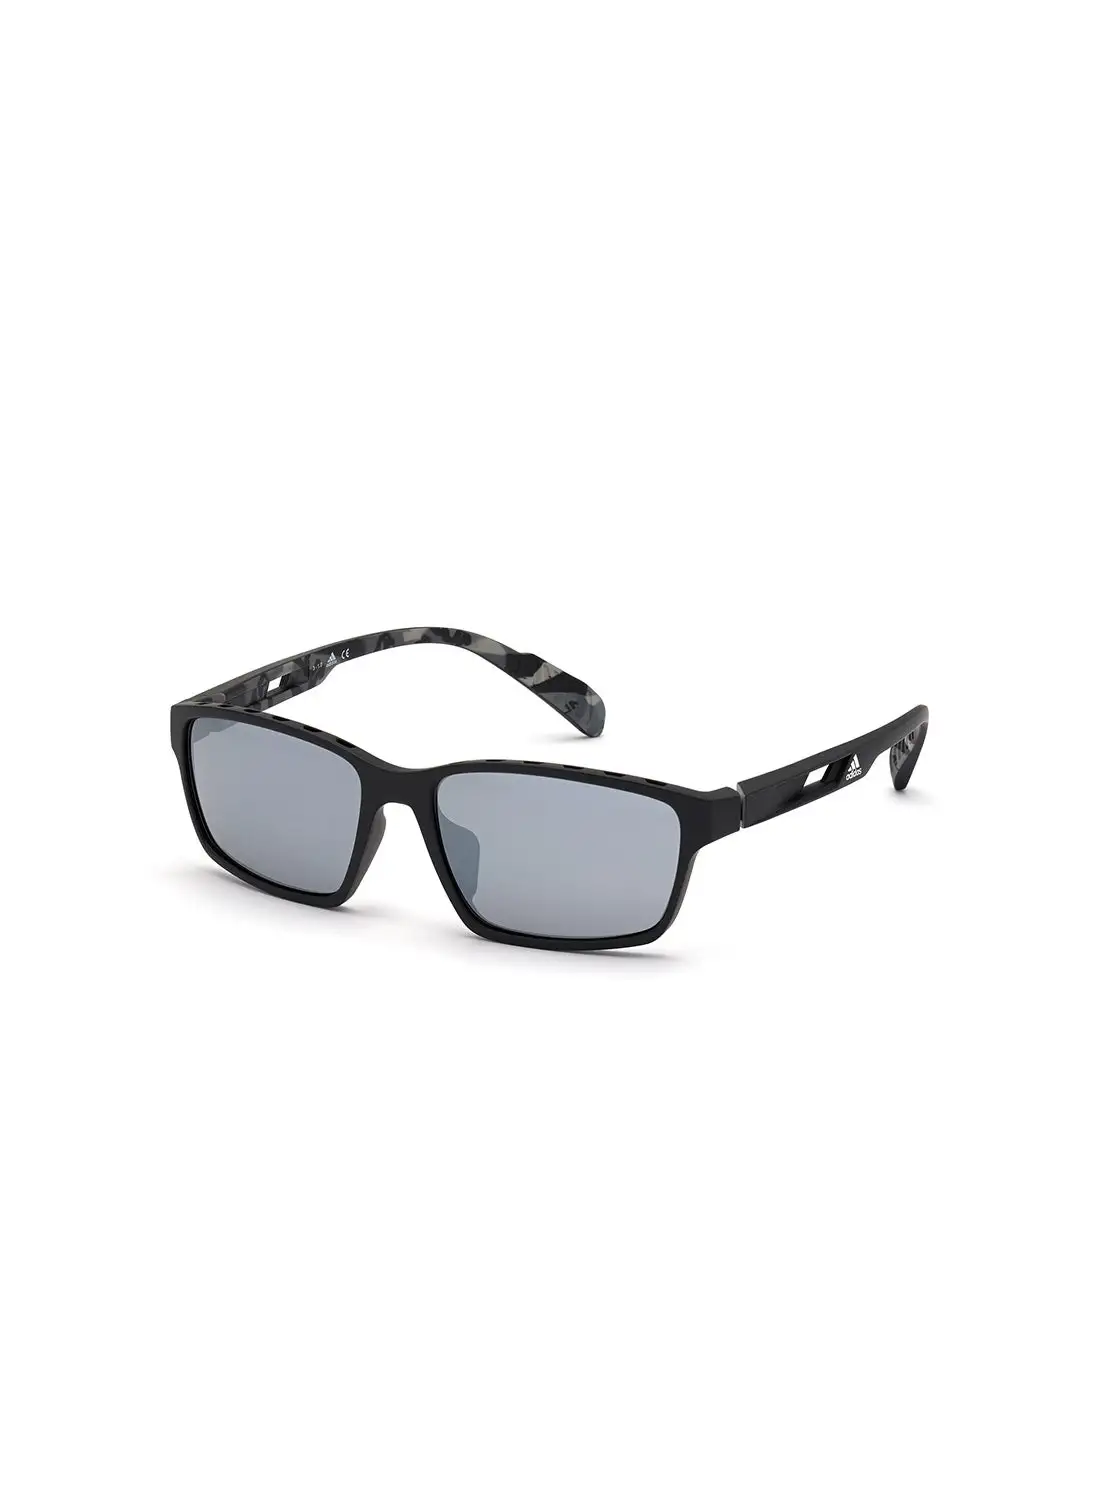 نظارة شمسية للجنسين من اديداس للحماية من الأشعة فوق البنفسجية - SP002402C58 - مقاس العدسة: 58 ملم